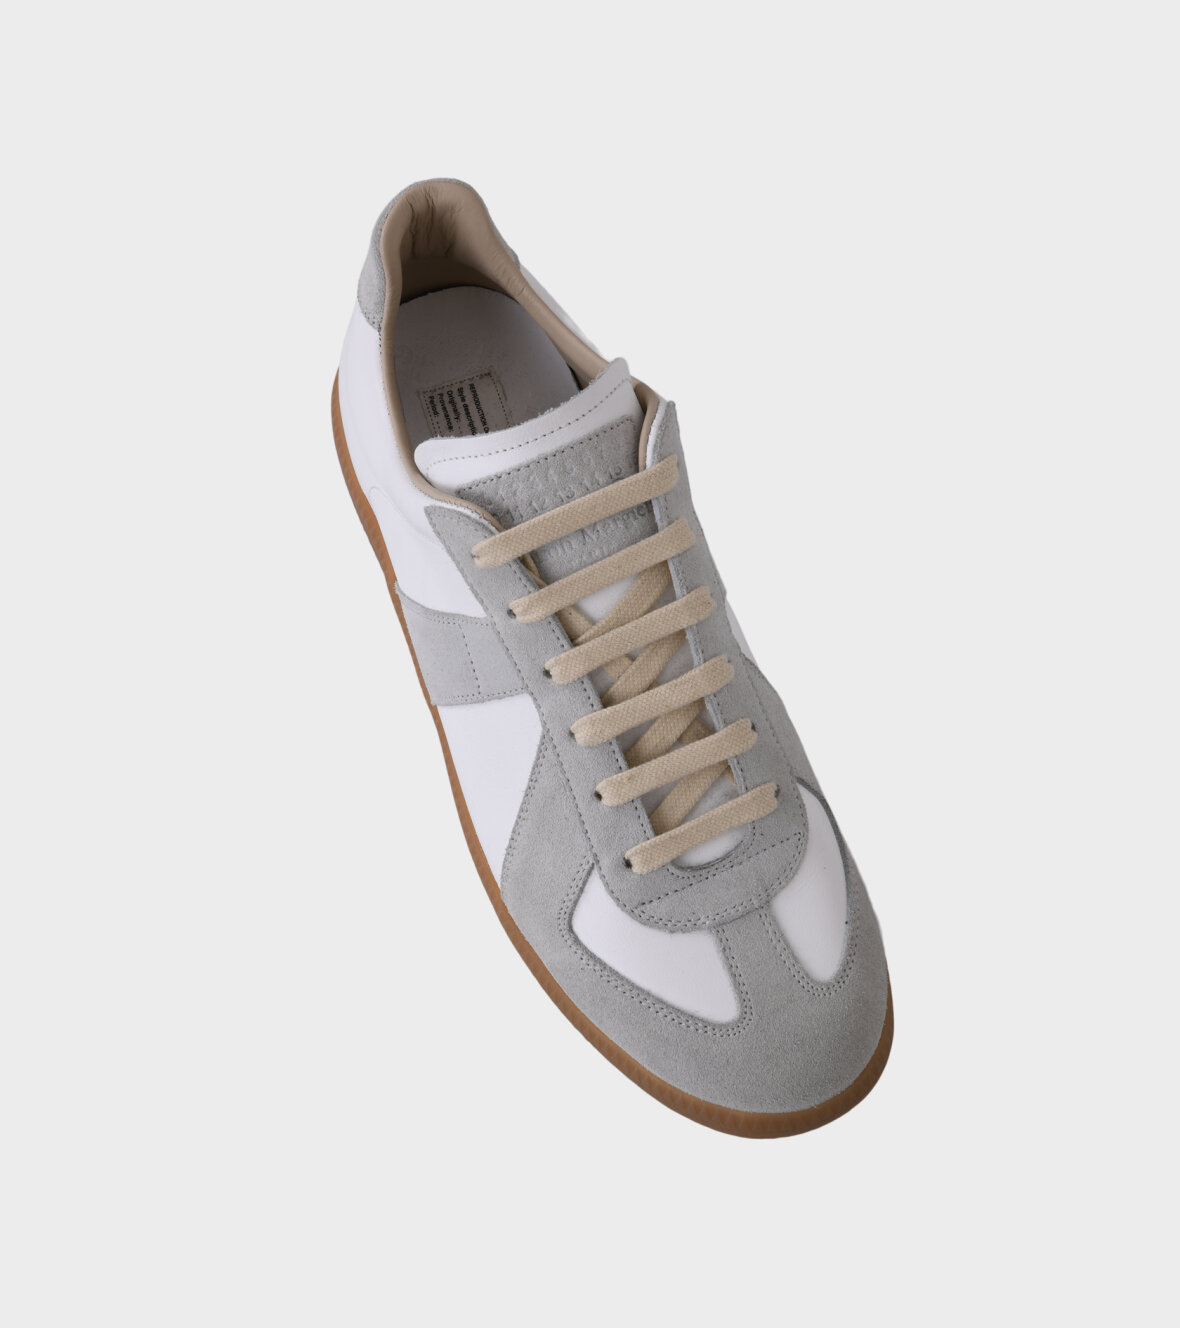 Forventning Eller senere Resten dr. Adams - Maison Margiela Replica Sneakers White